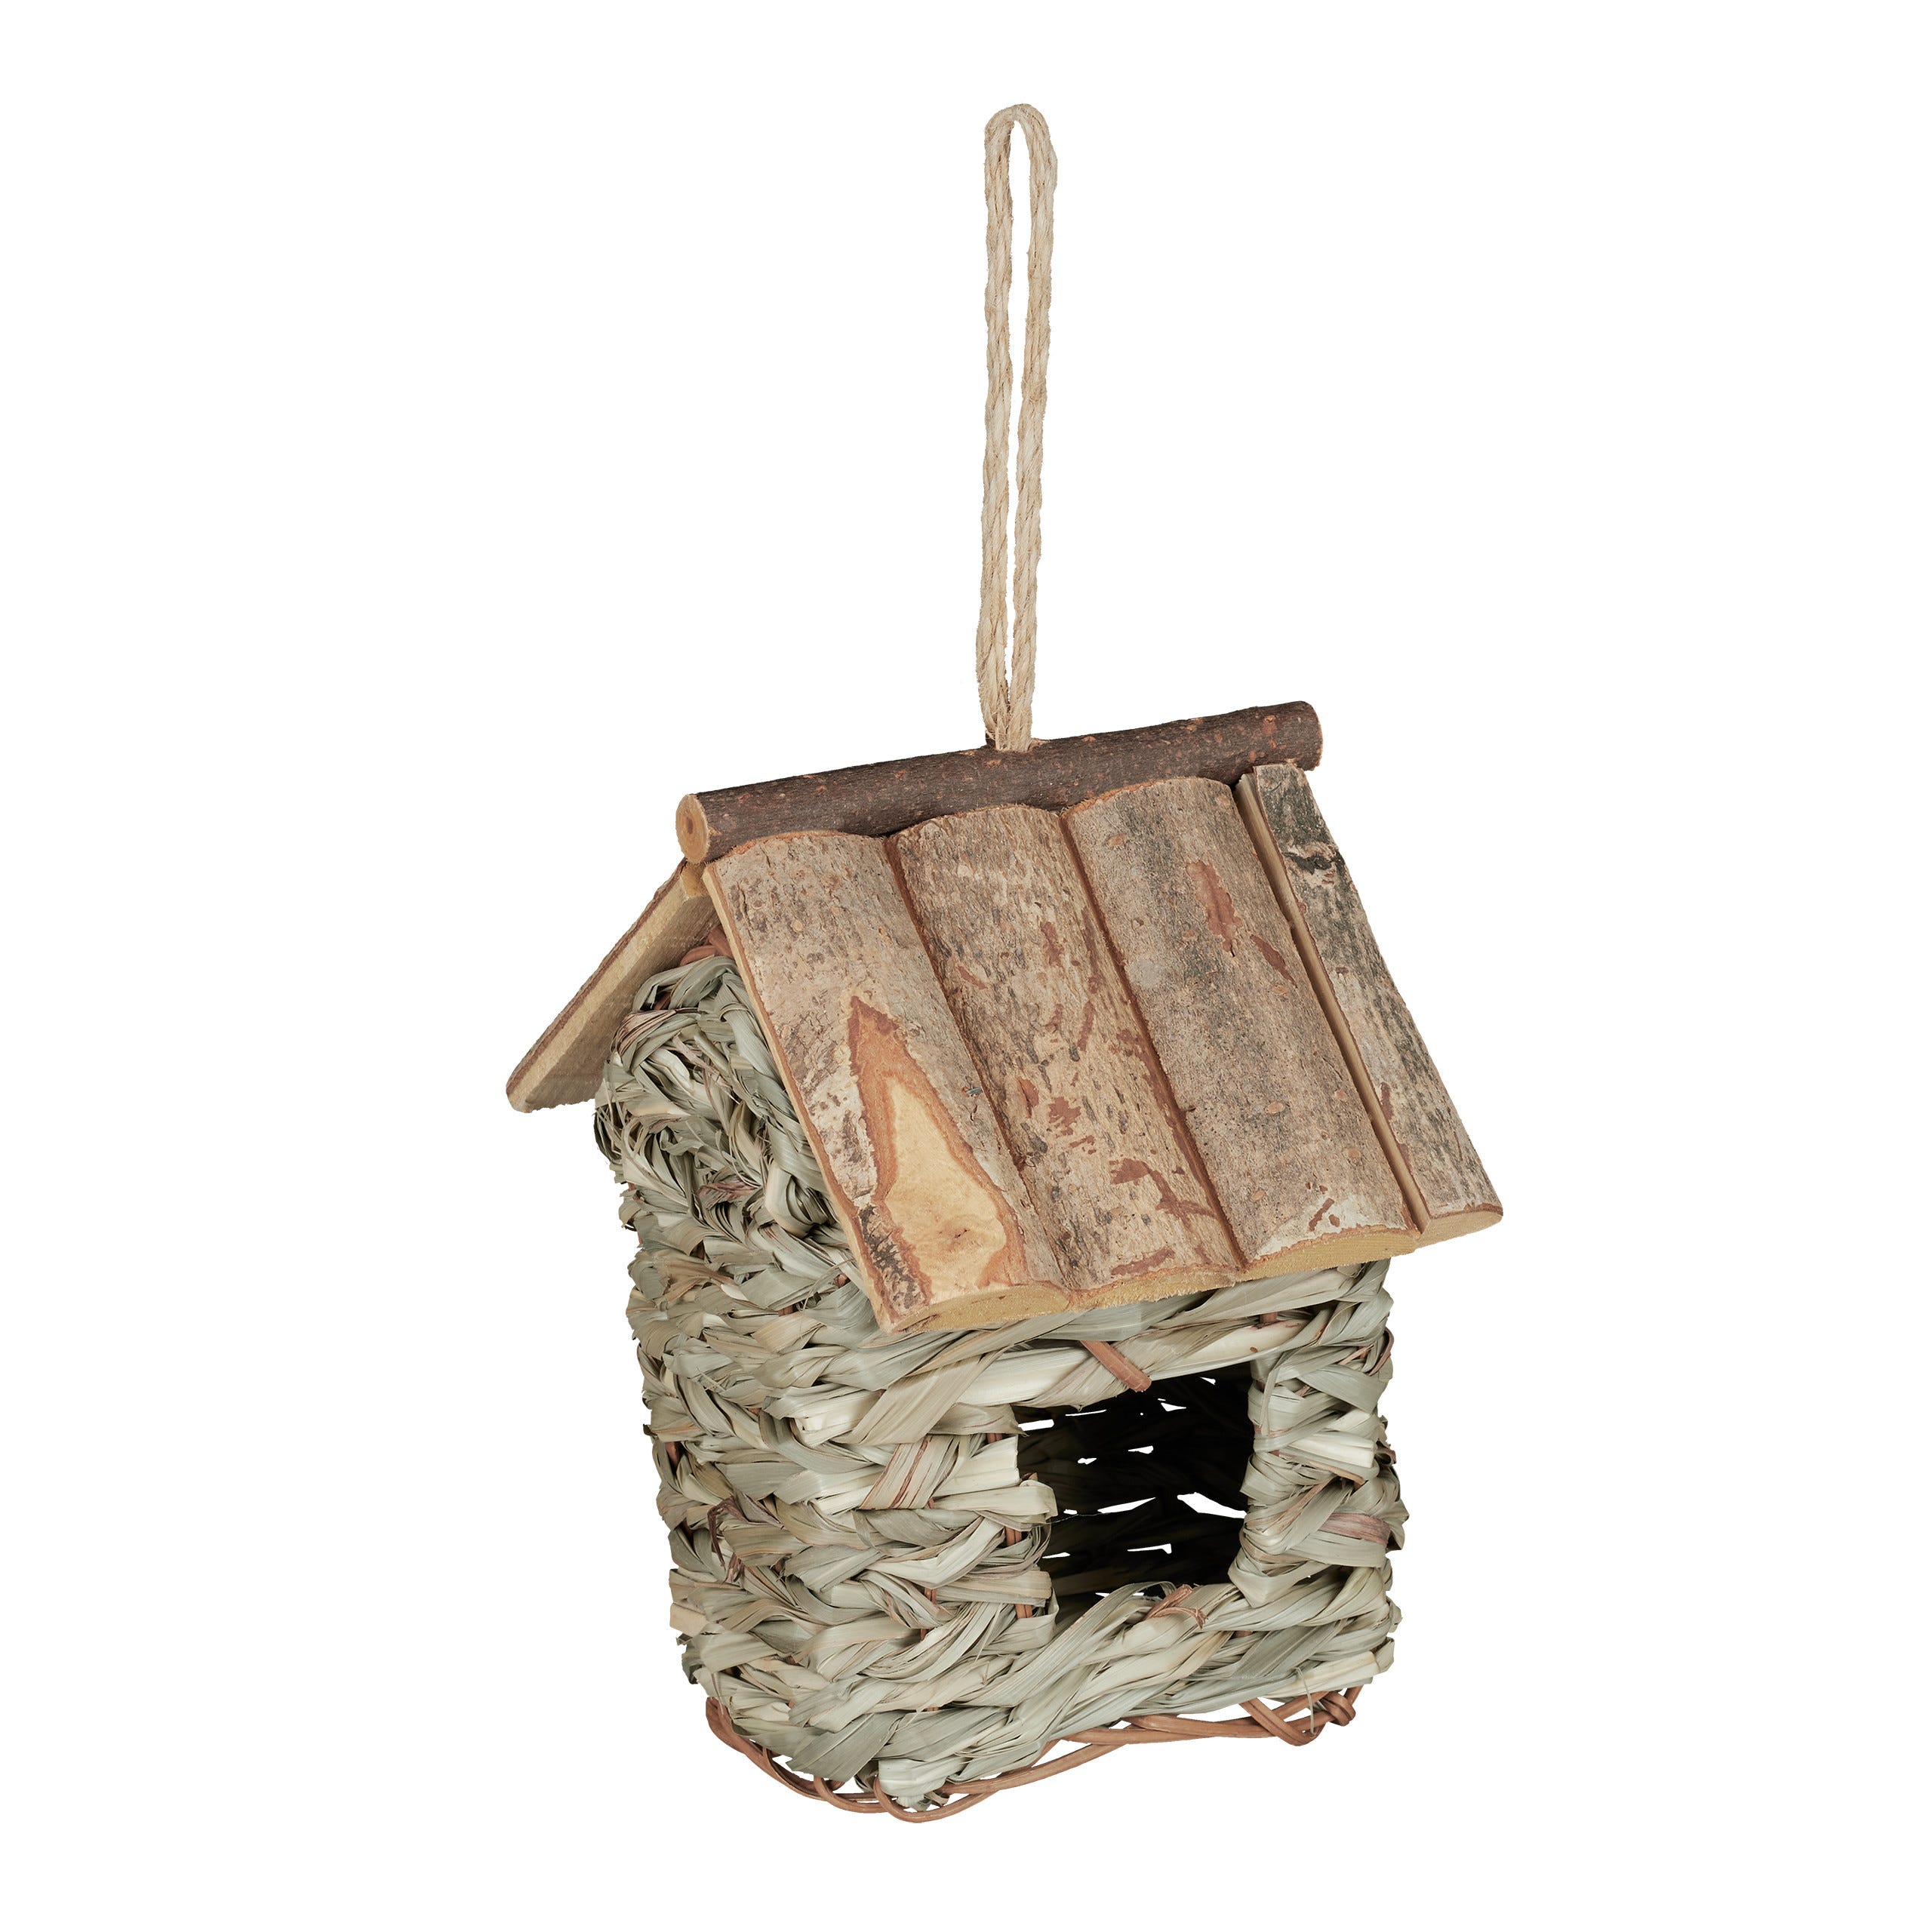 Nichoir maison en bois pour oiseaux